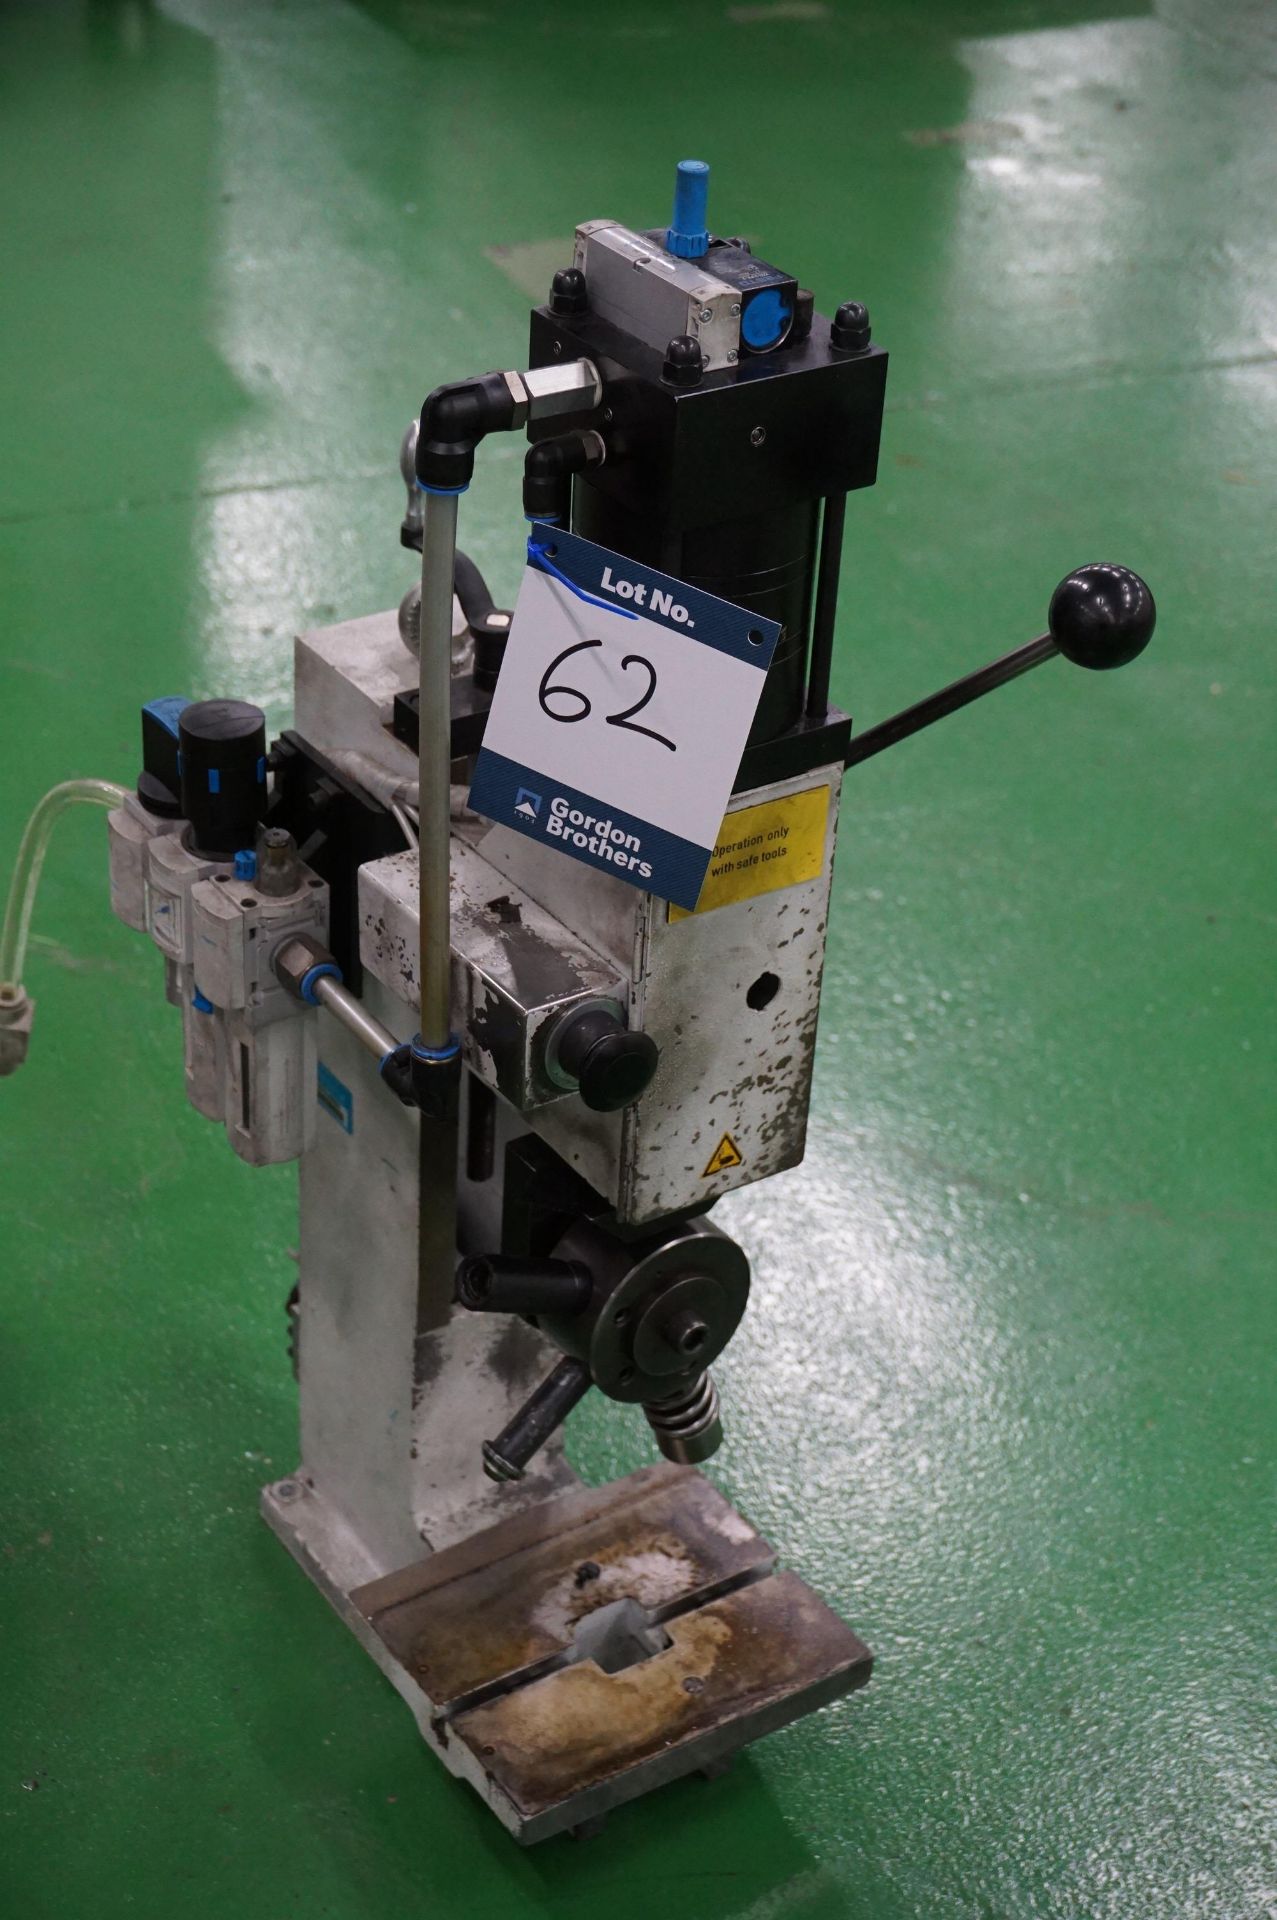 Gechter 12 Kn HKPL single rotary head press